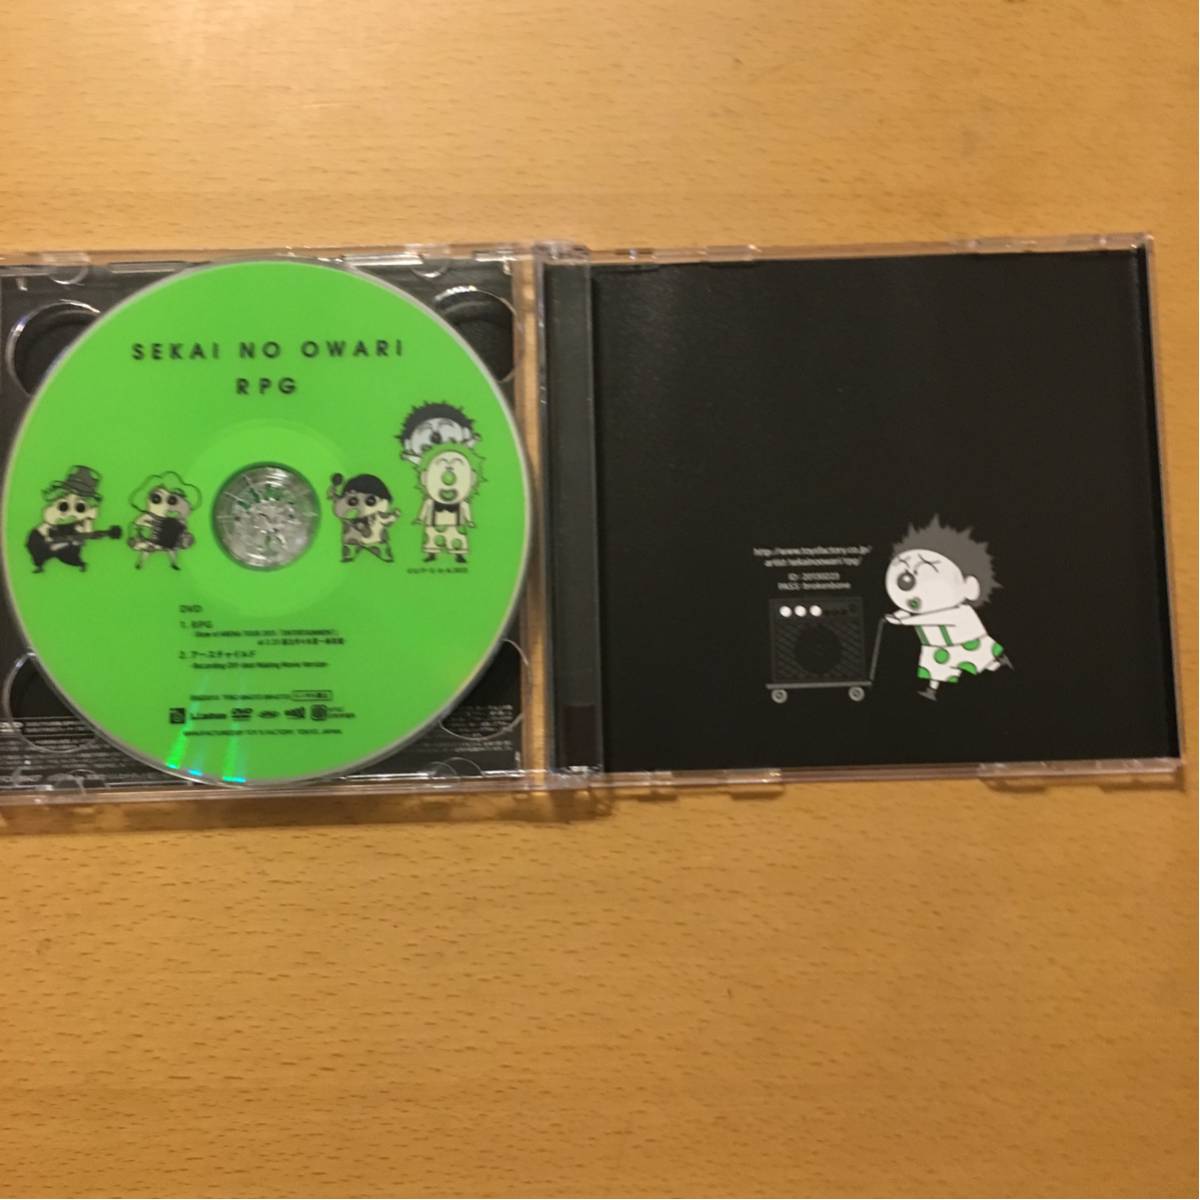 sekai no owari rpg 初回限定盤cd dvd 美品 クレヨンしんちゃん 80